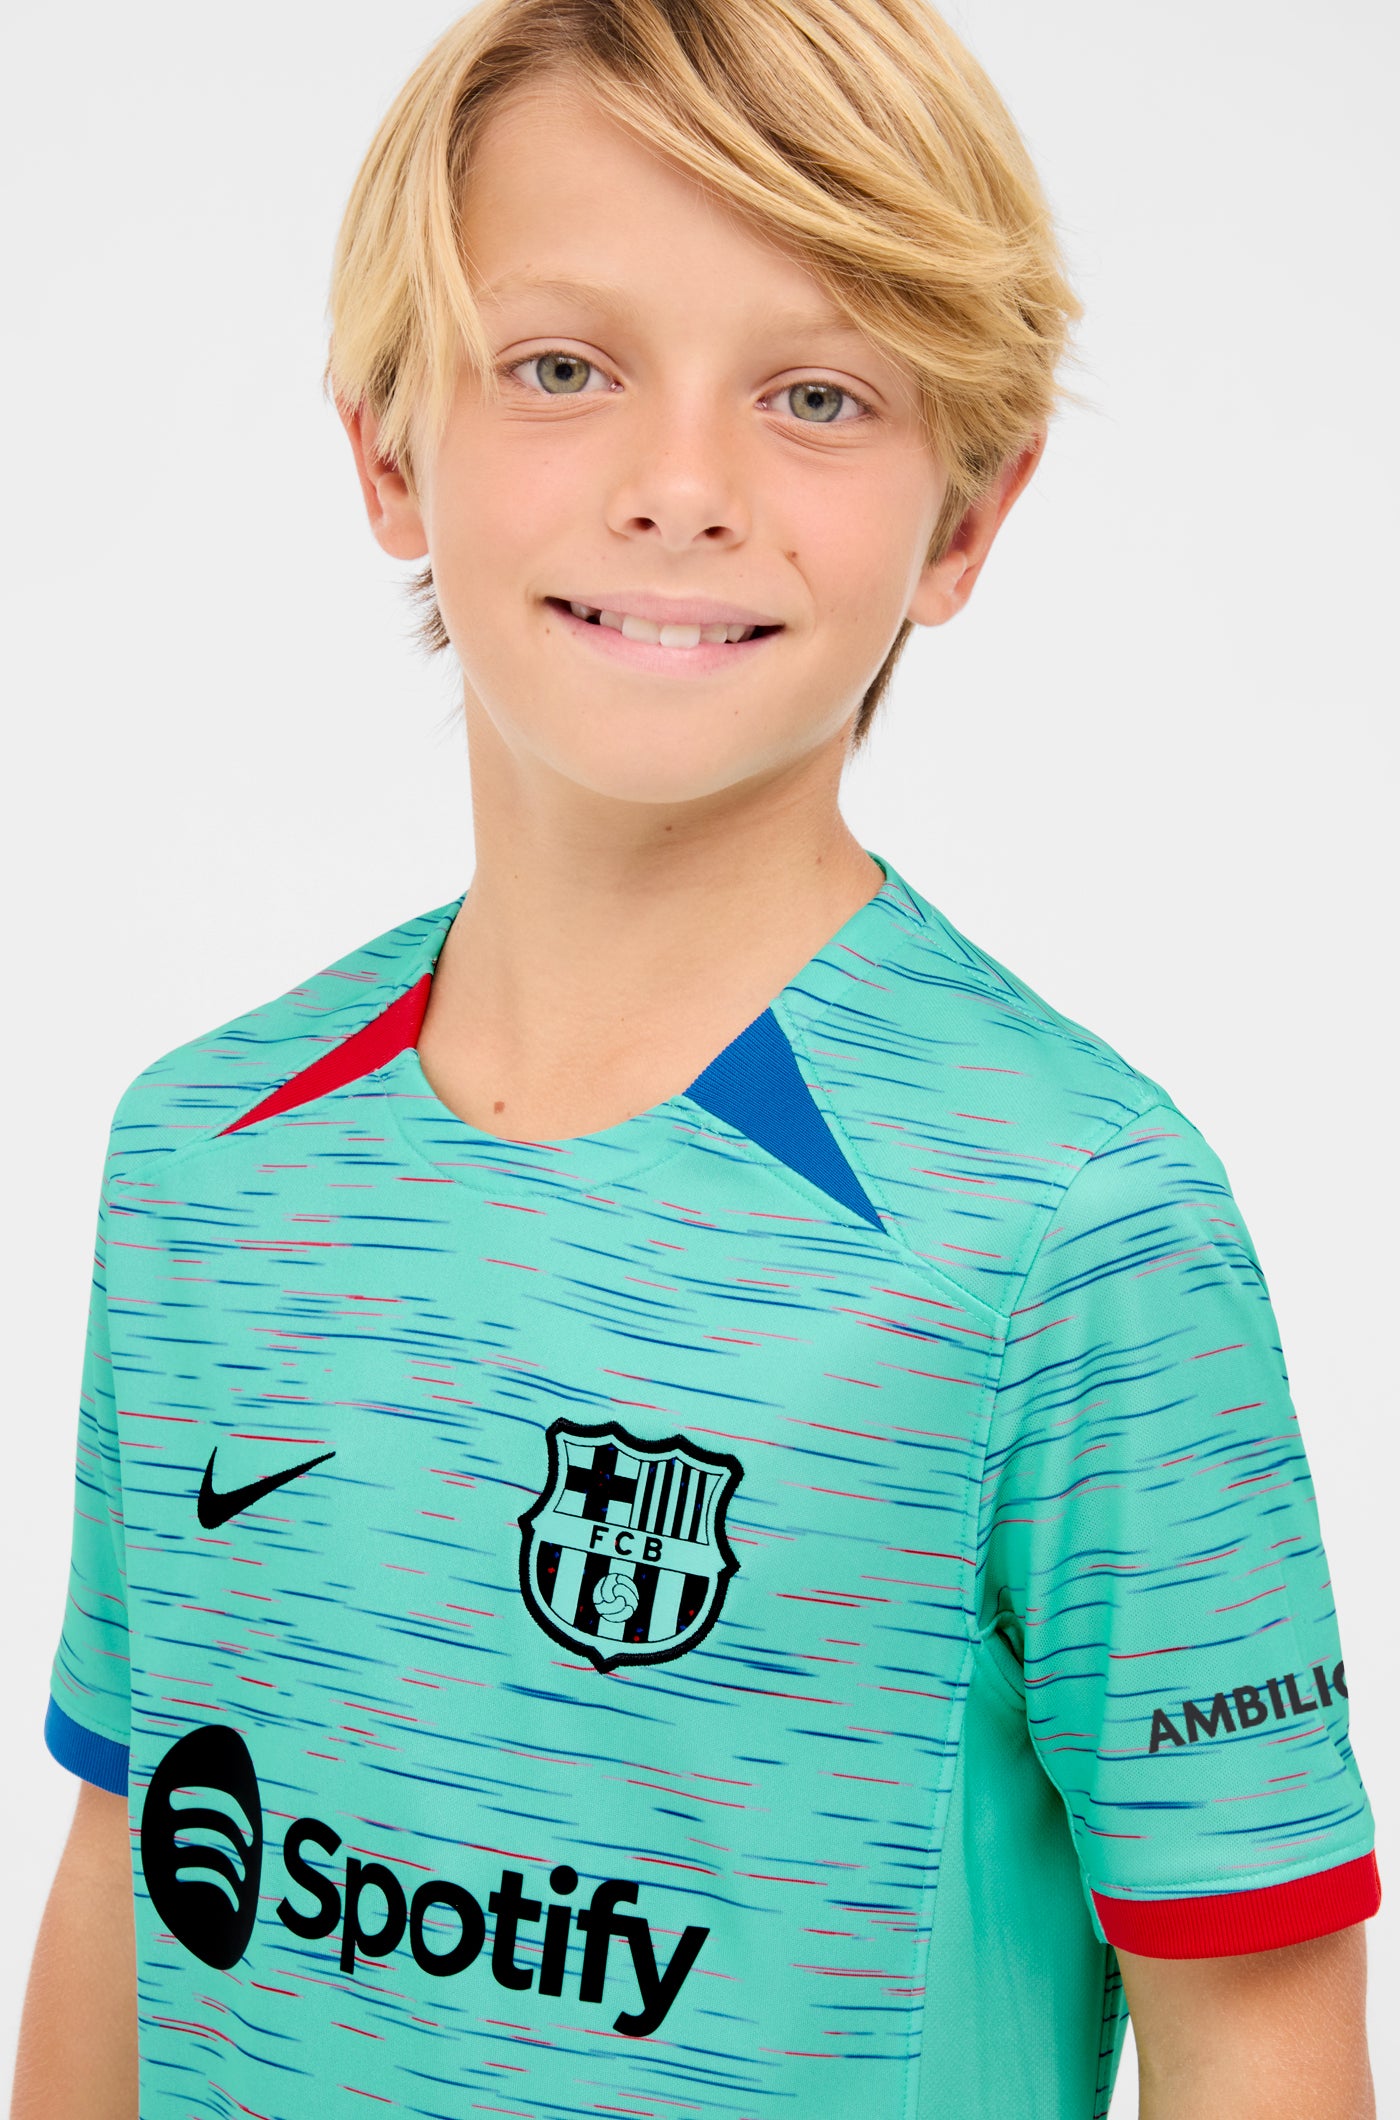 Equipaciones para niños y niñas – Barça Official Store Spotify